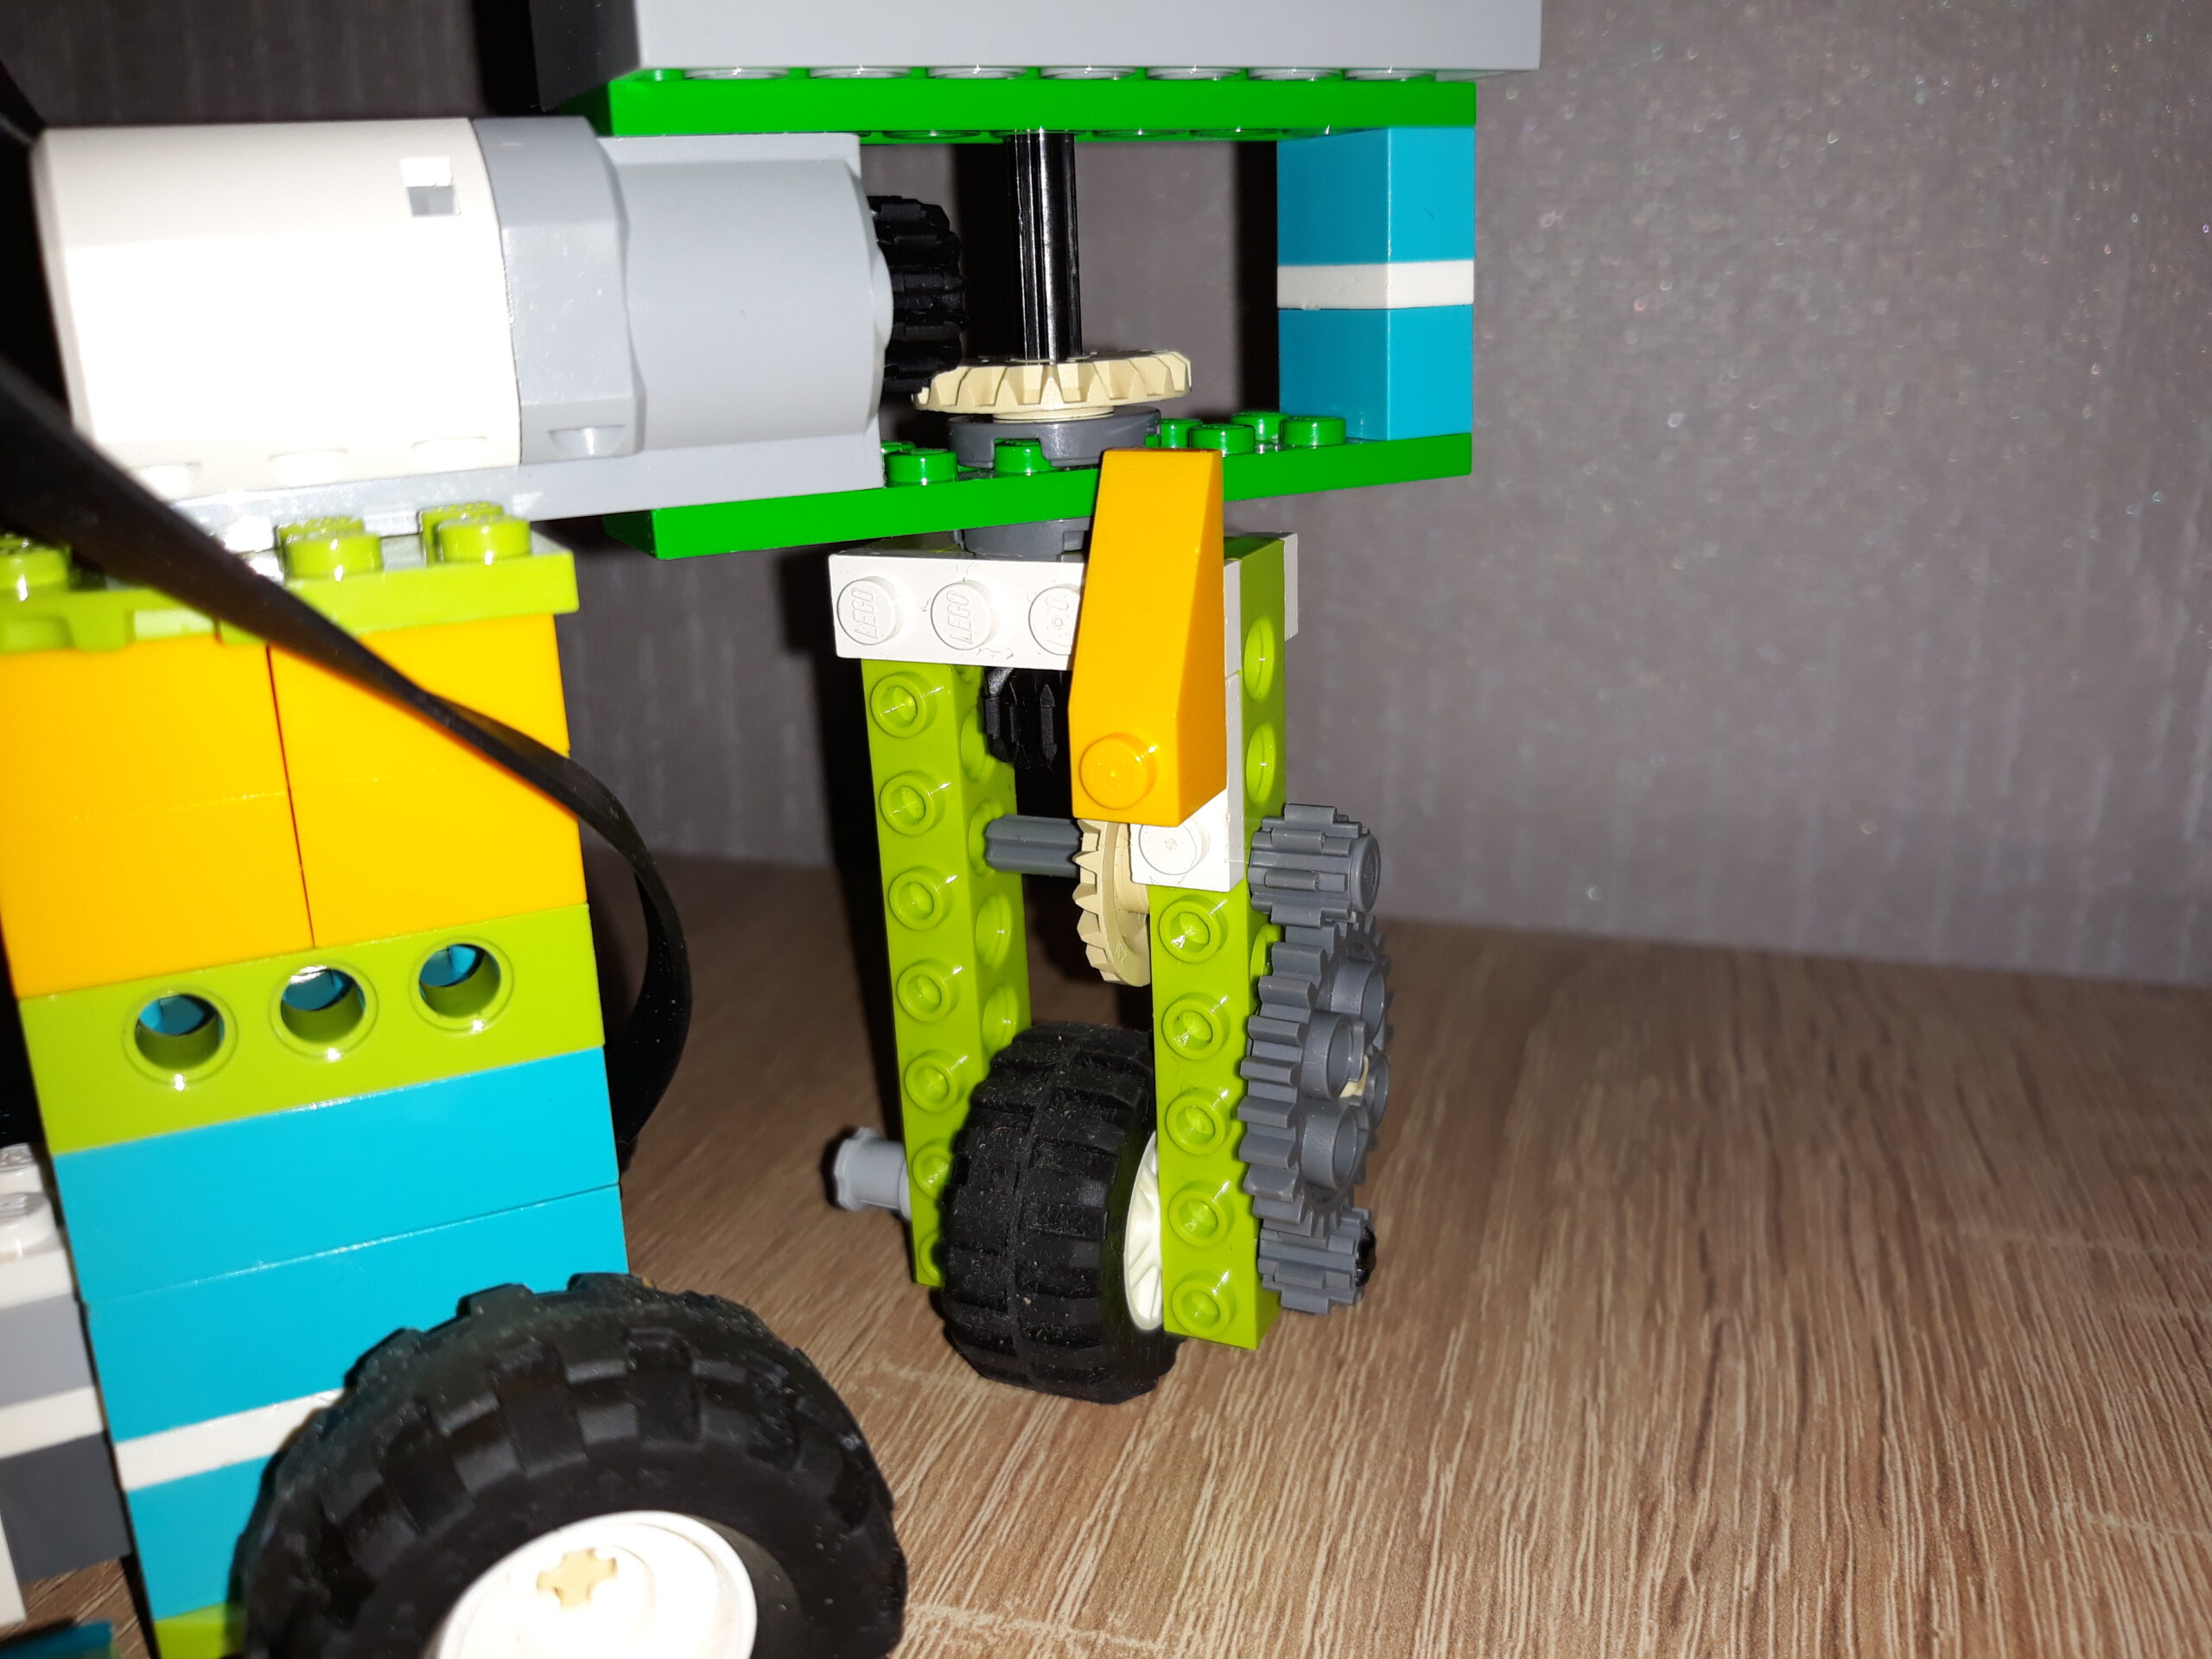 Инструкция по сборке из набора LEGO Education WeDo 2.0 Скорпион